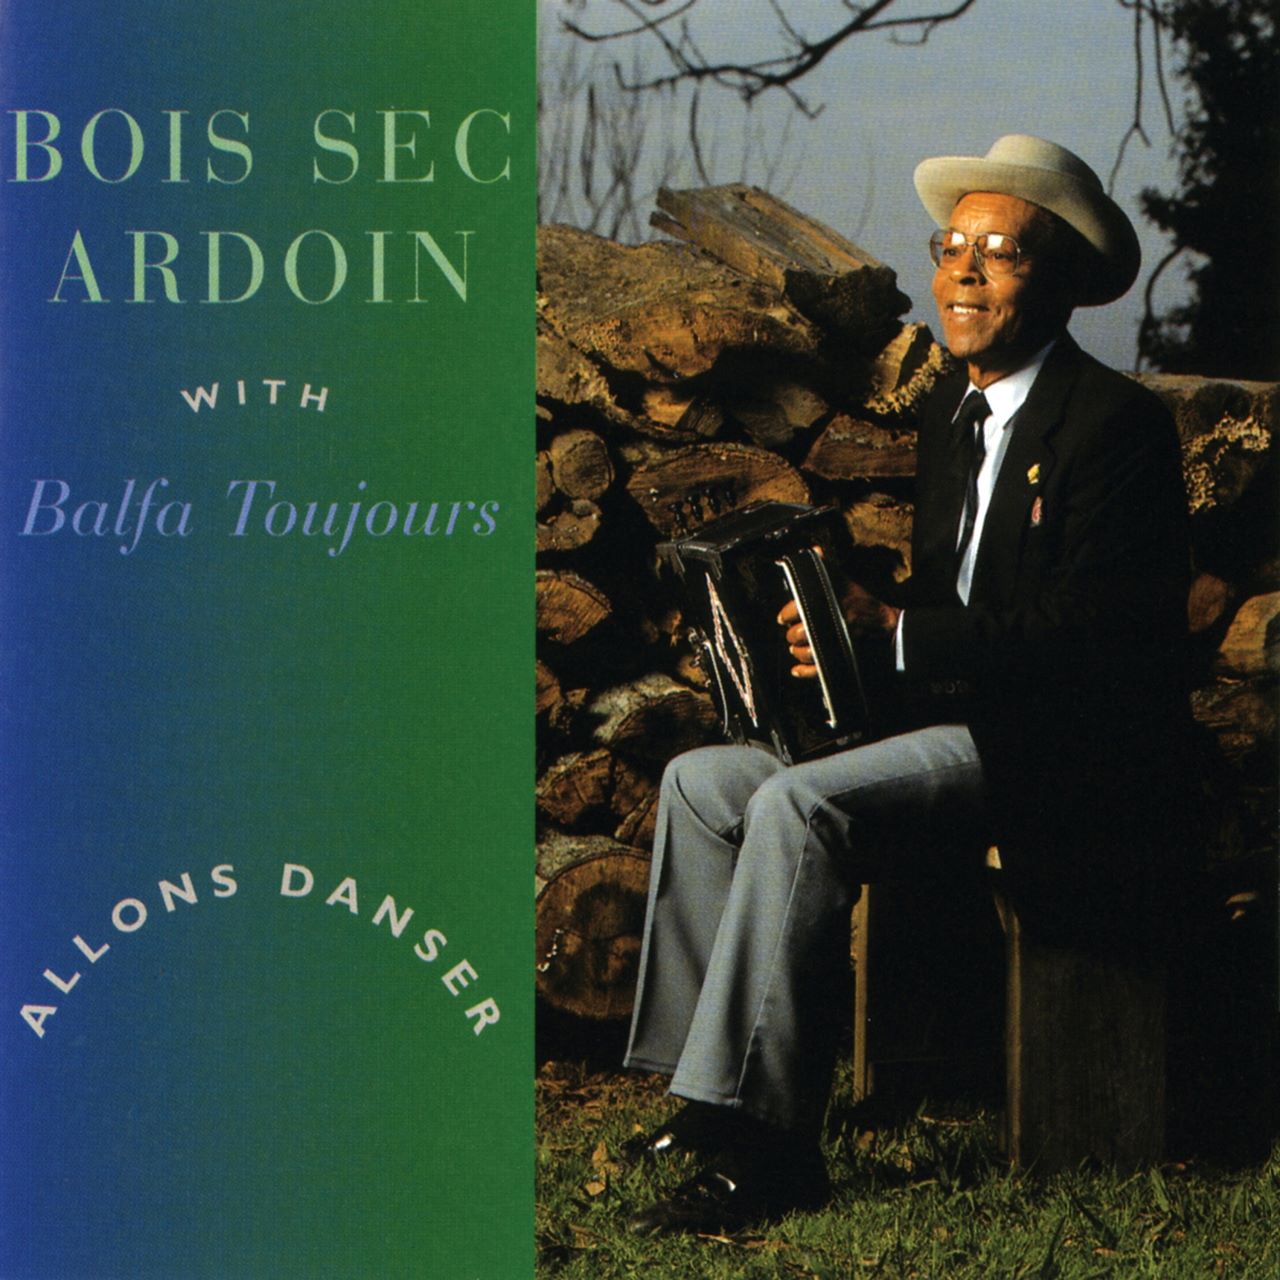 Bois Sec Ardoin With Balfa Toujours - Allons Danser cover album